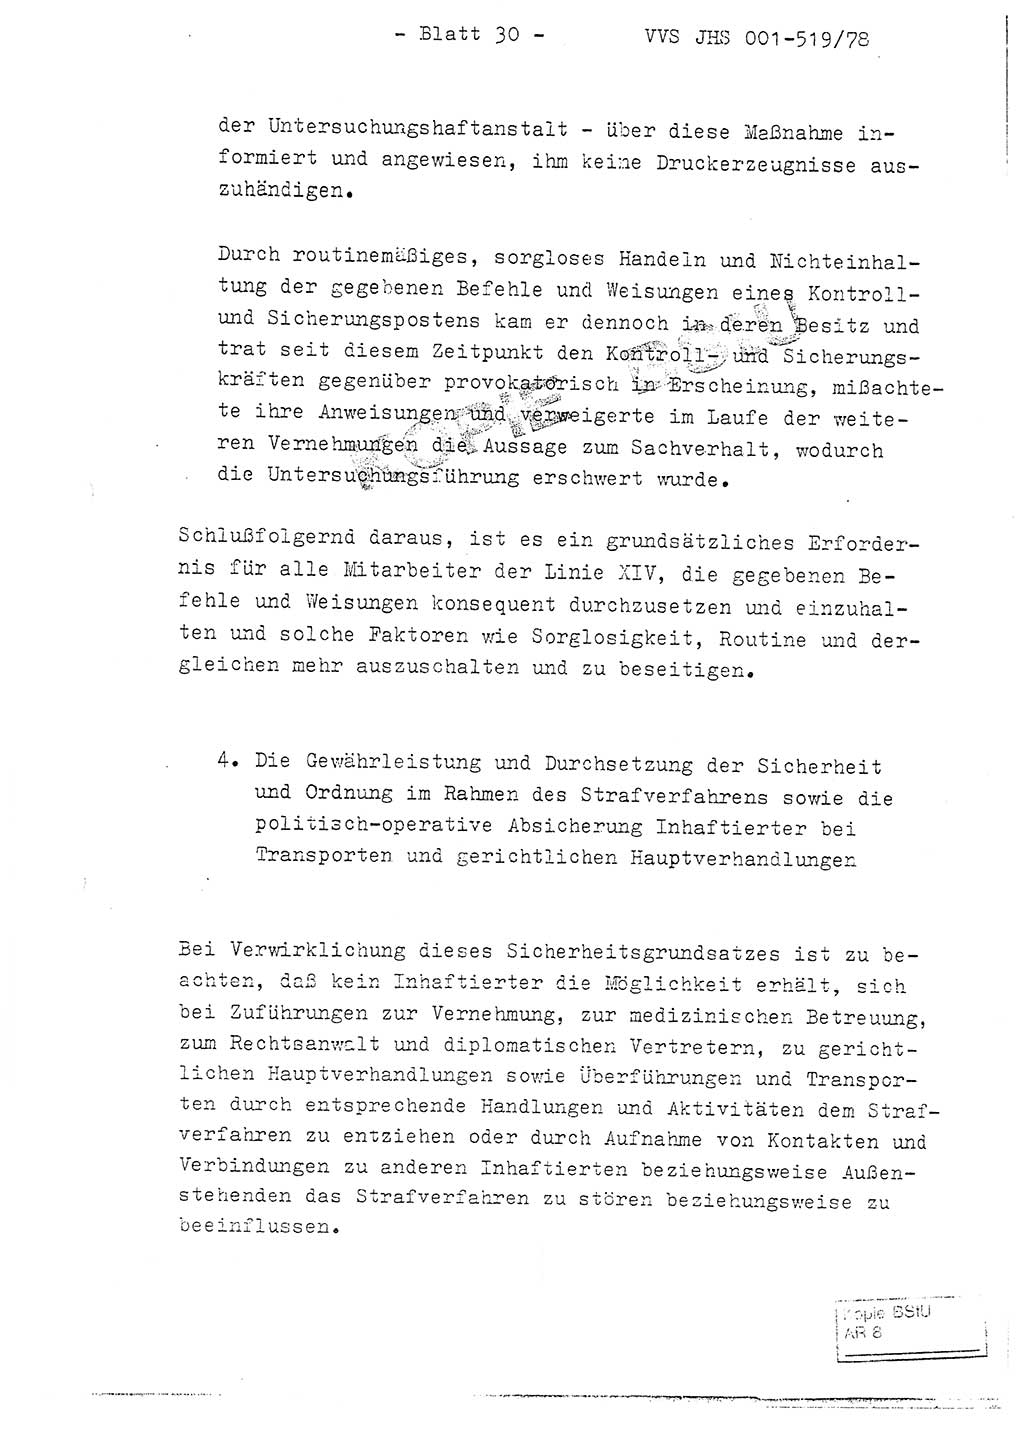 Fachschulabschlußarbeit Hauptmann Alfons Lützelberger (Abt. ⅩⅣ), Ministerium für Staatssicherheit (MfS) [Deutsche Demokratische Republik (DDR)], Juristische Hochschule (JHS), Vertrauliche Verschlußsache (VVS) 001-519/78, Potsdam 1978, Blatt 30 (FS-Abschl.-Arb. MfS DDR JHS VVS 001-519/78 1978, Bl. 30)